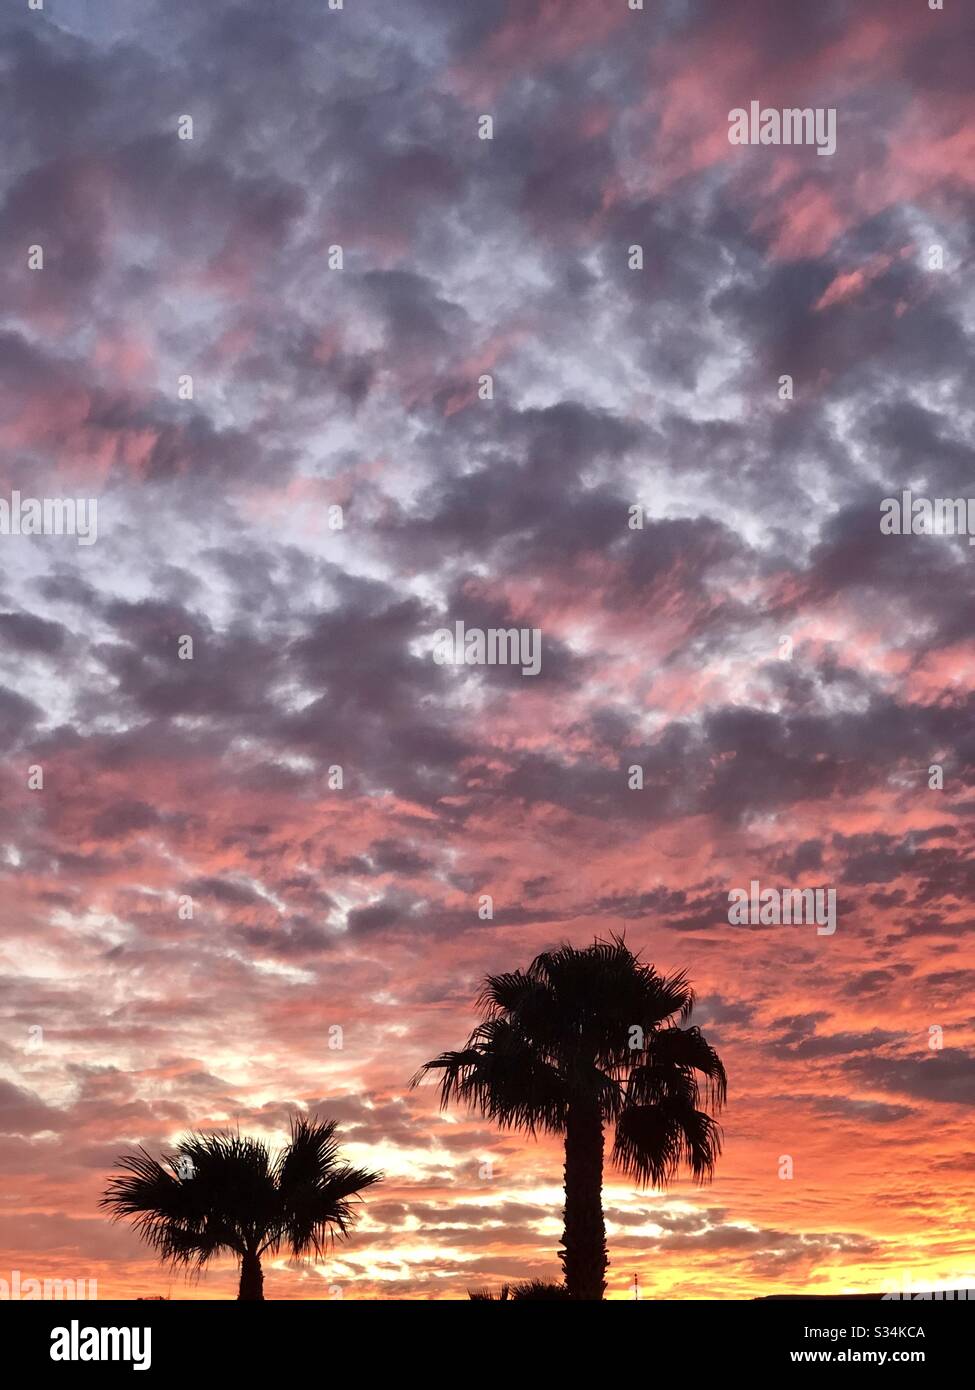 Feuriger Himmel, Sonnenuntergang, viele Wolken, verschiedene Farben, grau, rosa, orangefarbene Sorten, leuchtendes Gelb von der Sonne, zwei Palmenoberflächen, Kopierraum, Natur, natürlich, YumaAZ Stockfoto